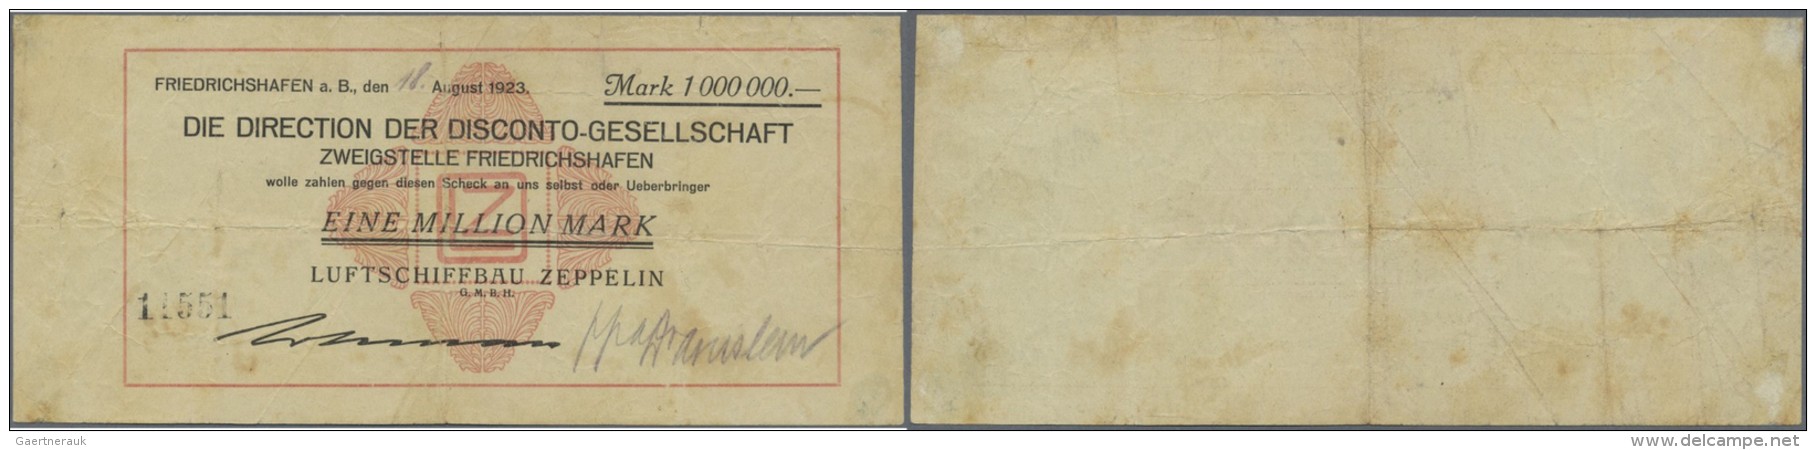 Deutschland - Notgeld - W&uuml;rttemberg: Friedrichshafen, Luftschiffbau Zeppelin GmbH, 1 Mio. Mark, 18.8.1923 (Tag Hand - Lokale Ausgaben